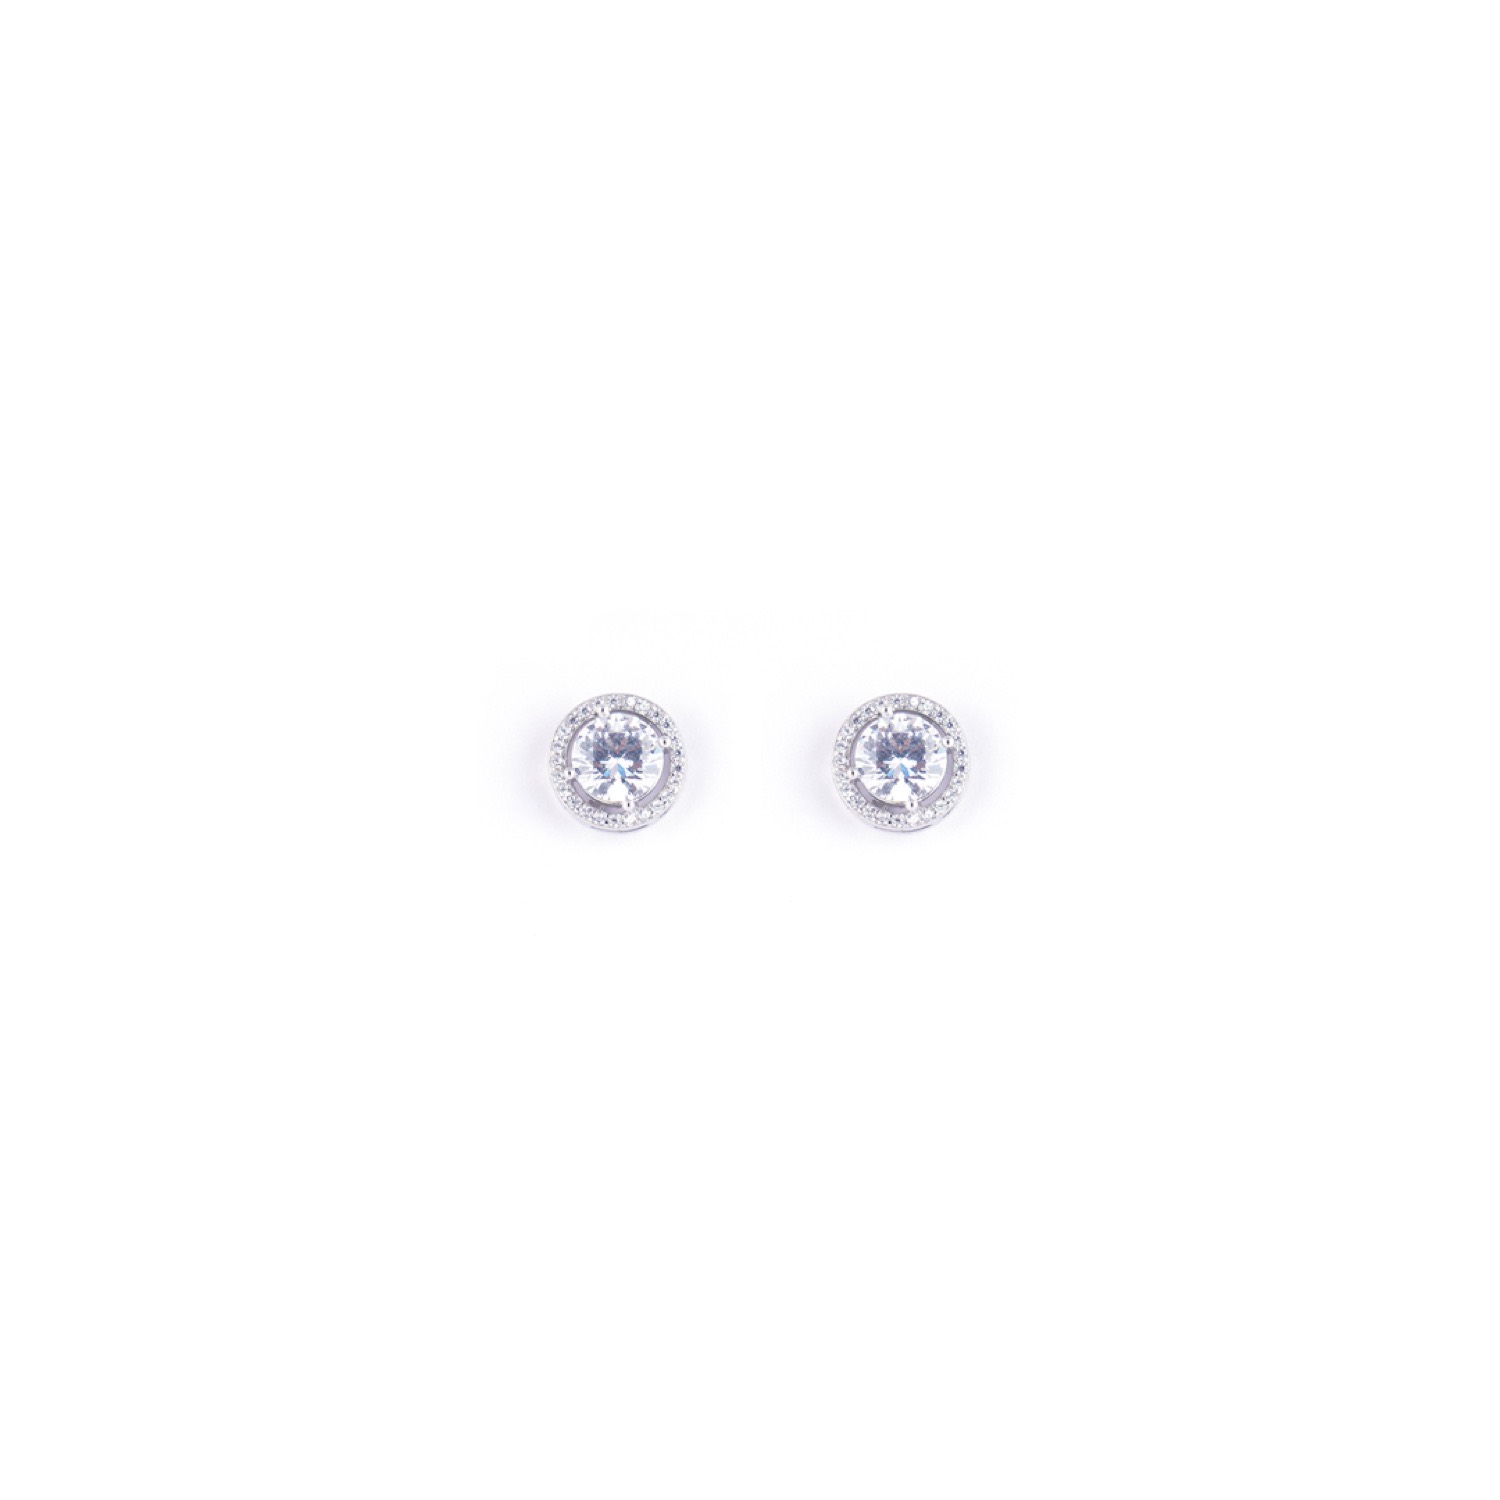 varam_earrings_102022_round_shaped_hollow_design_white_stone_silver_earrings-1